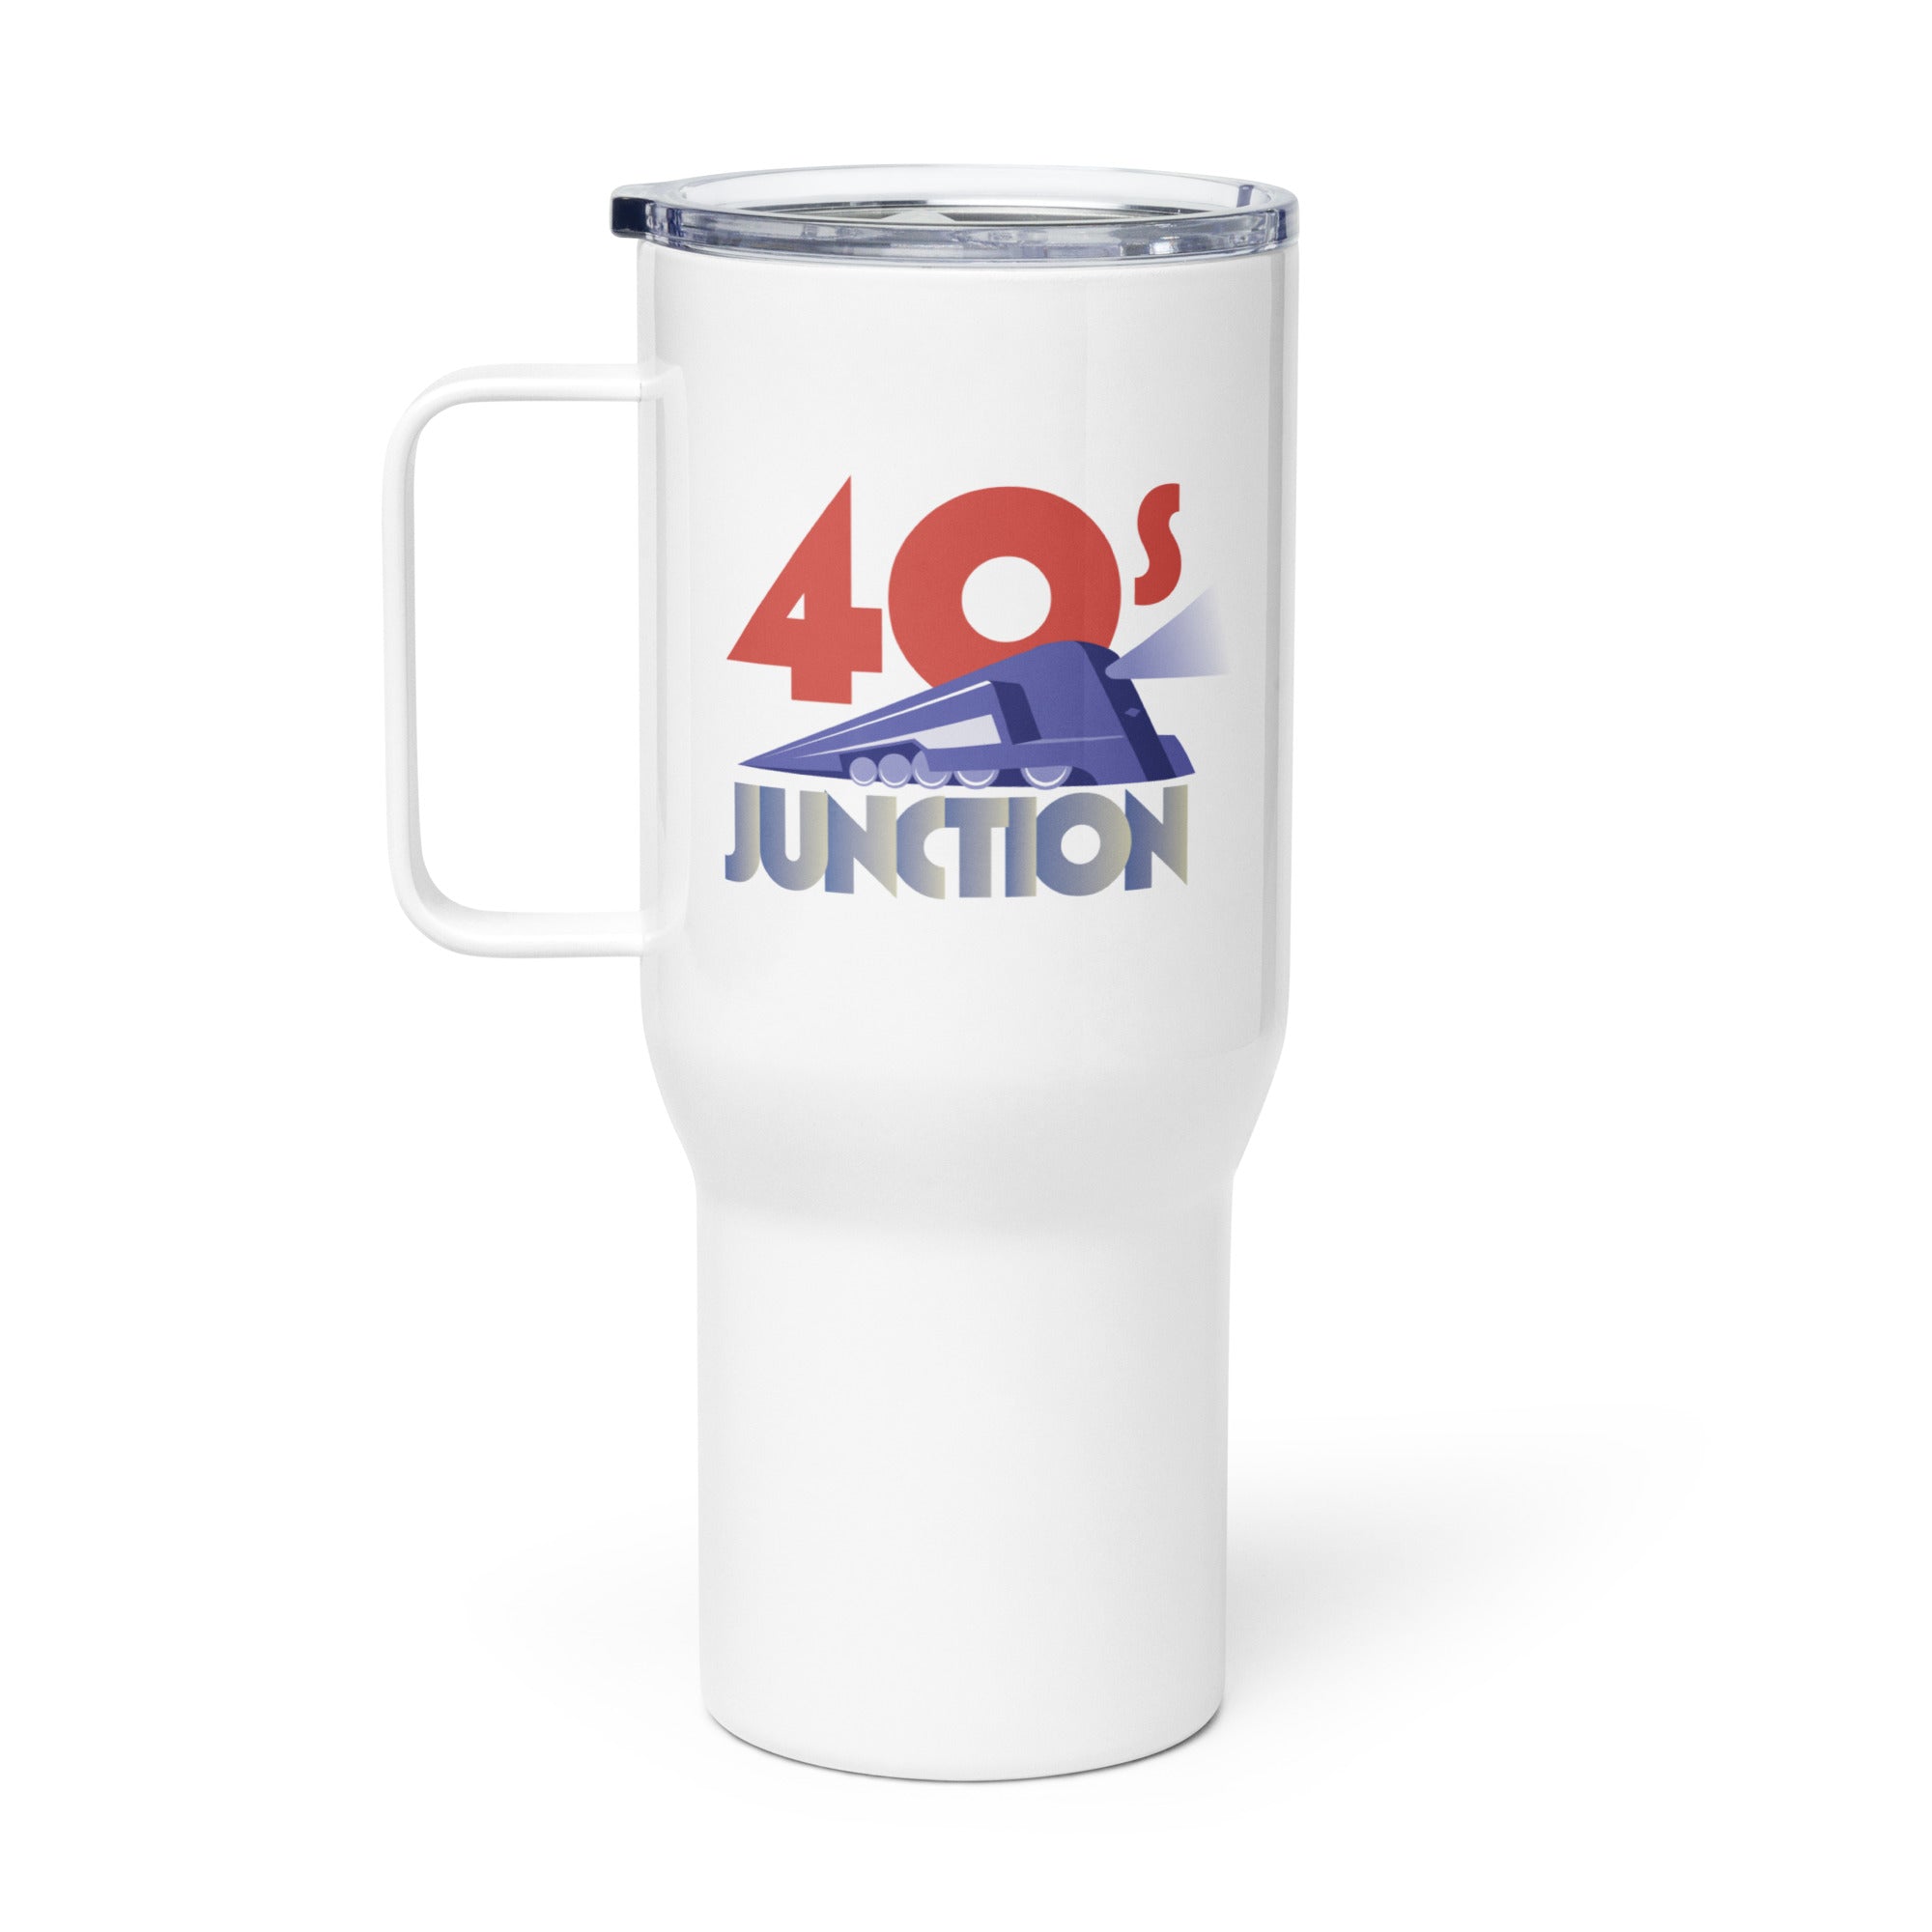 40s Junction: Travel Mug